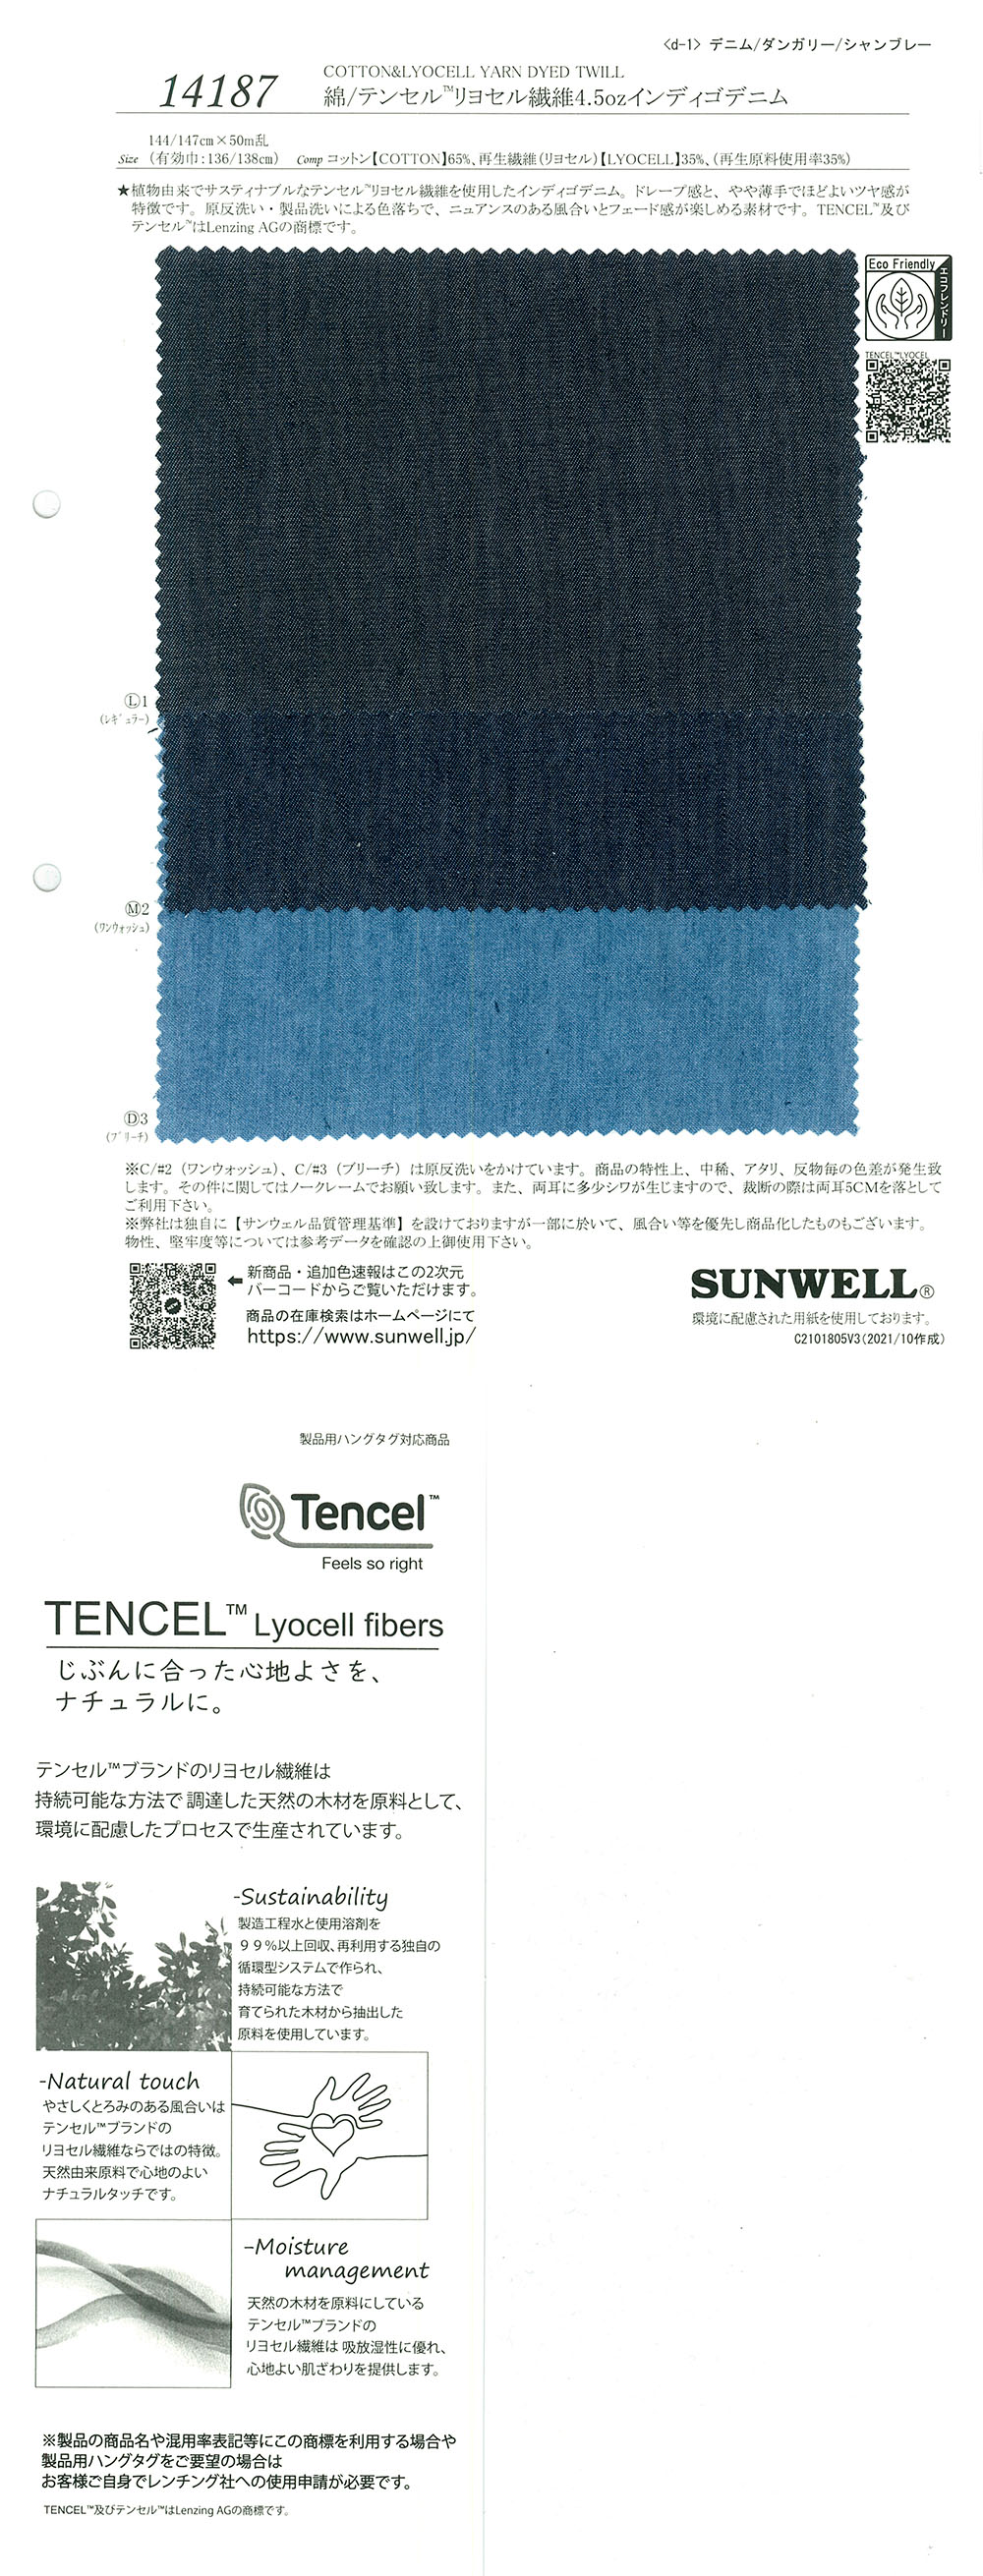 14187 Sợi Bông/Tencel(TM) Lyocell 4,5oz Vải Bò Màu Chàm SUNWELL ( Giếng Trời )